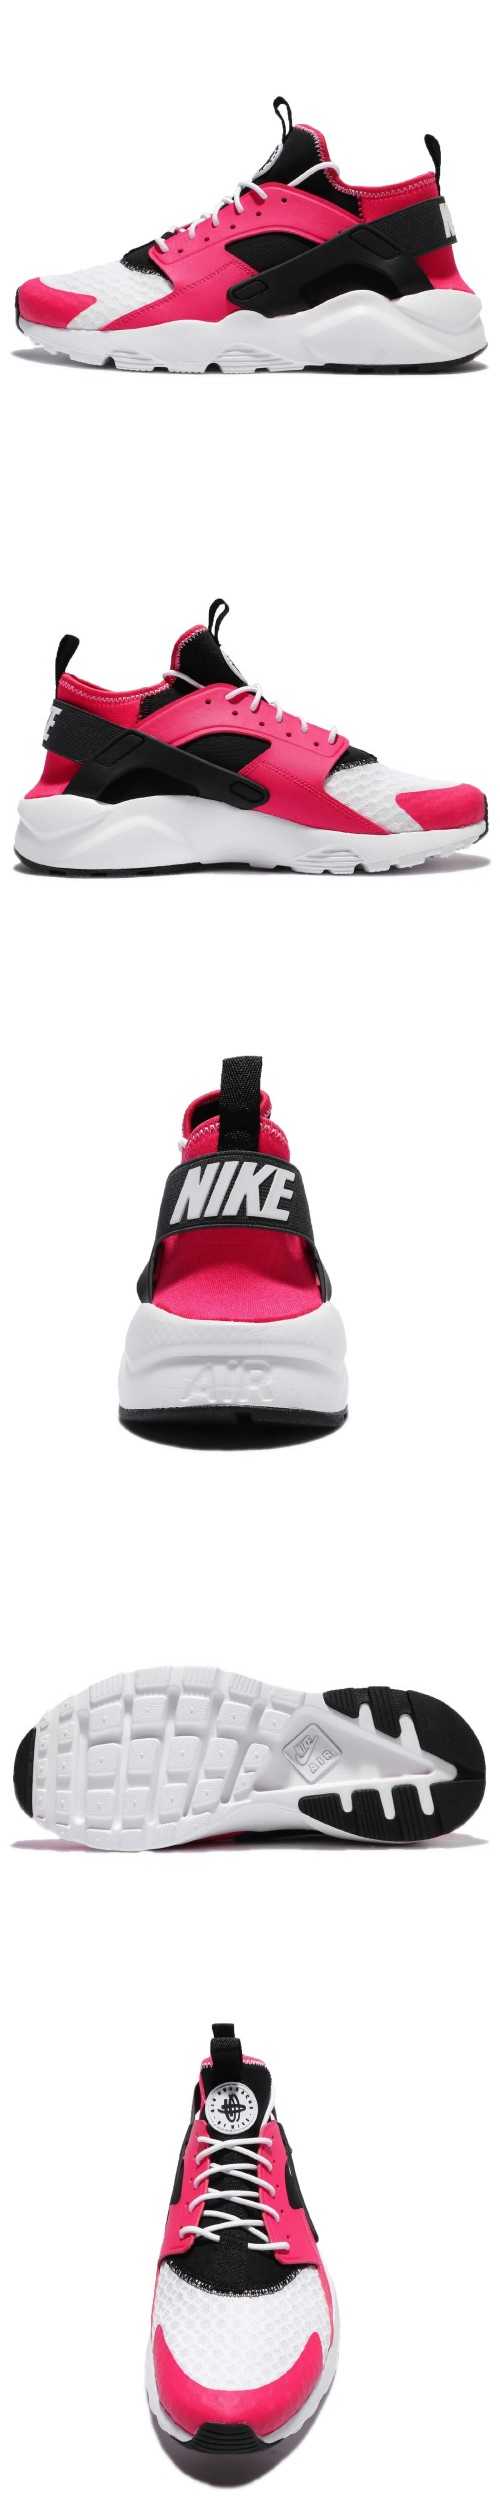 Nike Air Huarache Run 男鞋